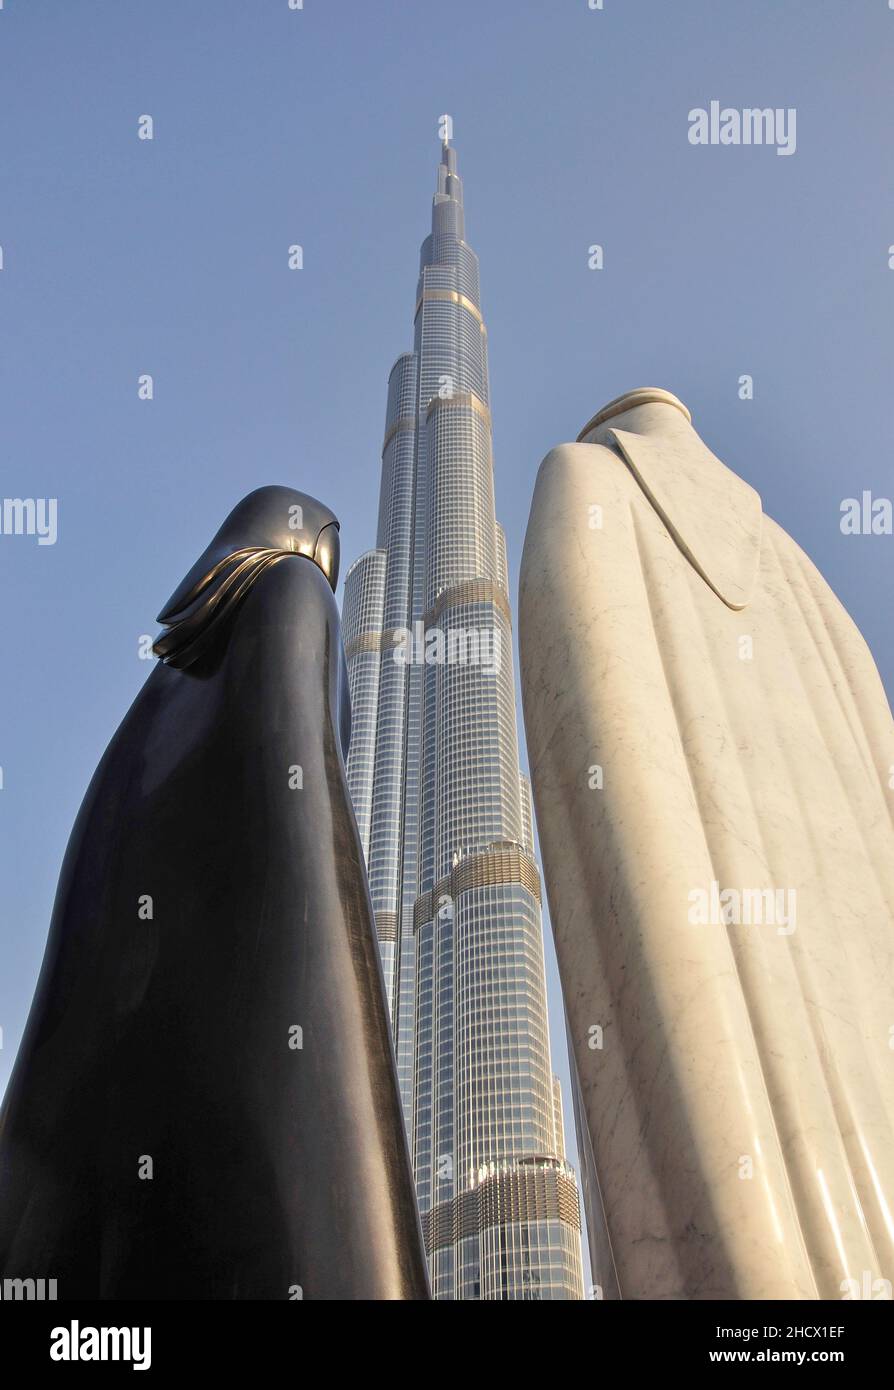 Das 'höchste' Burj Khalifa Gebäude der Welt und die arabische 'gemeinsam' Skulptur, Downtown Dubai, Dubai, United Arab Emirate Stockfoto